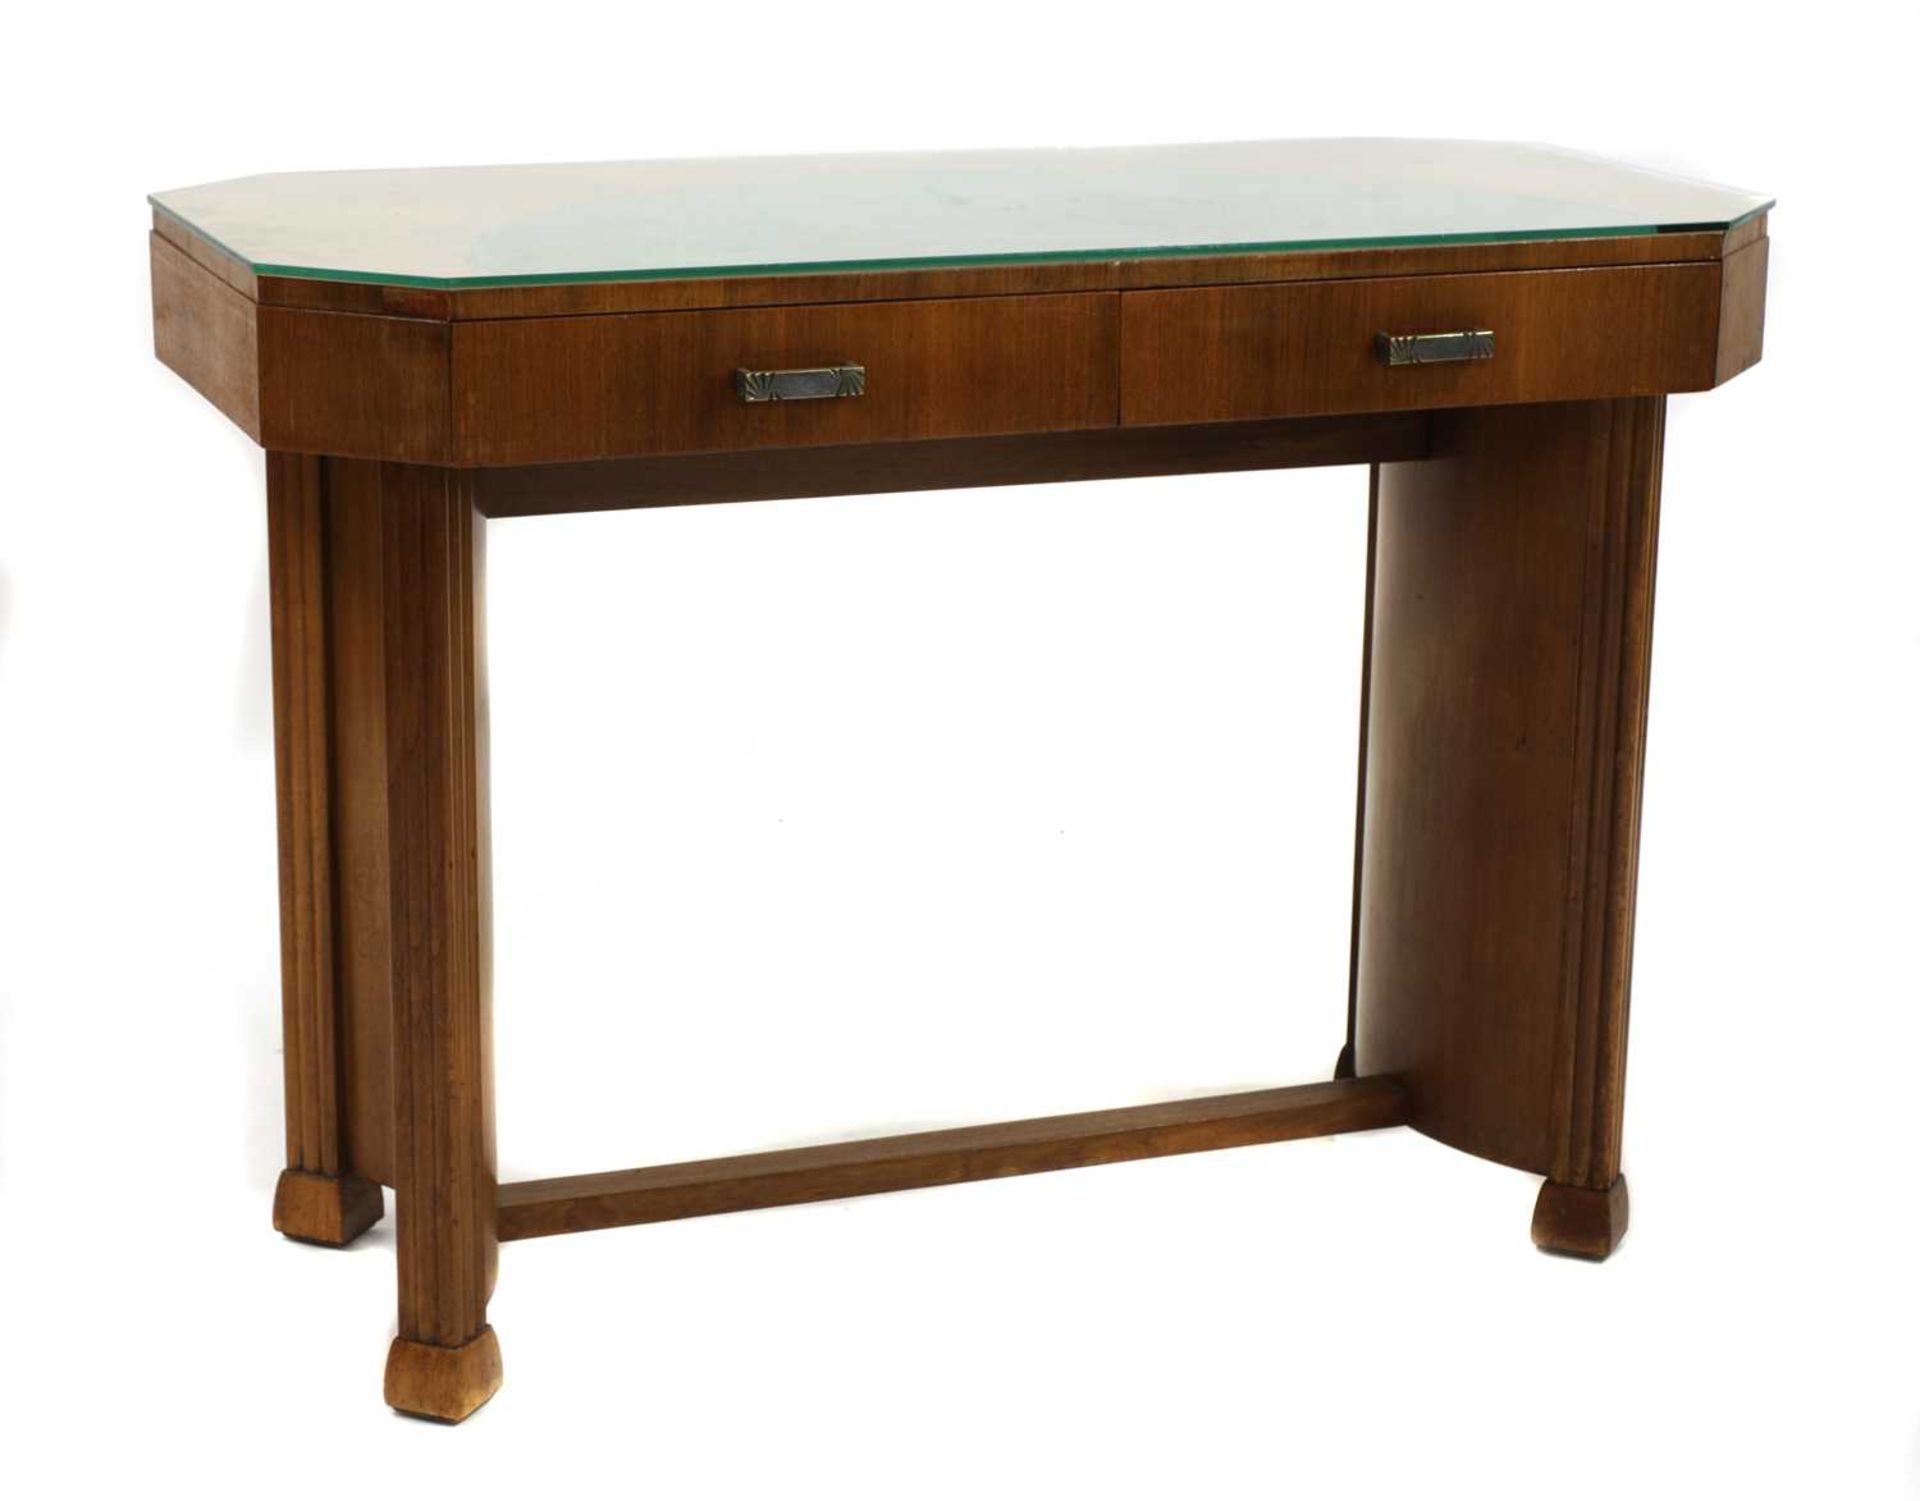 An Art Deco walnut desk,